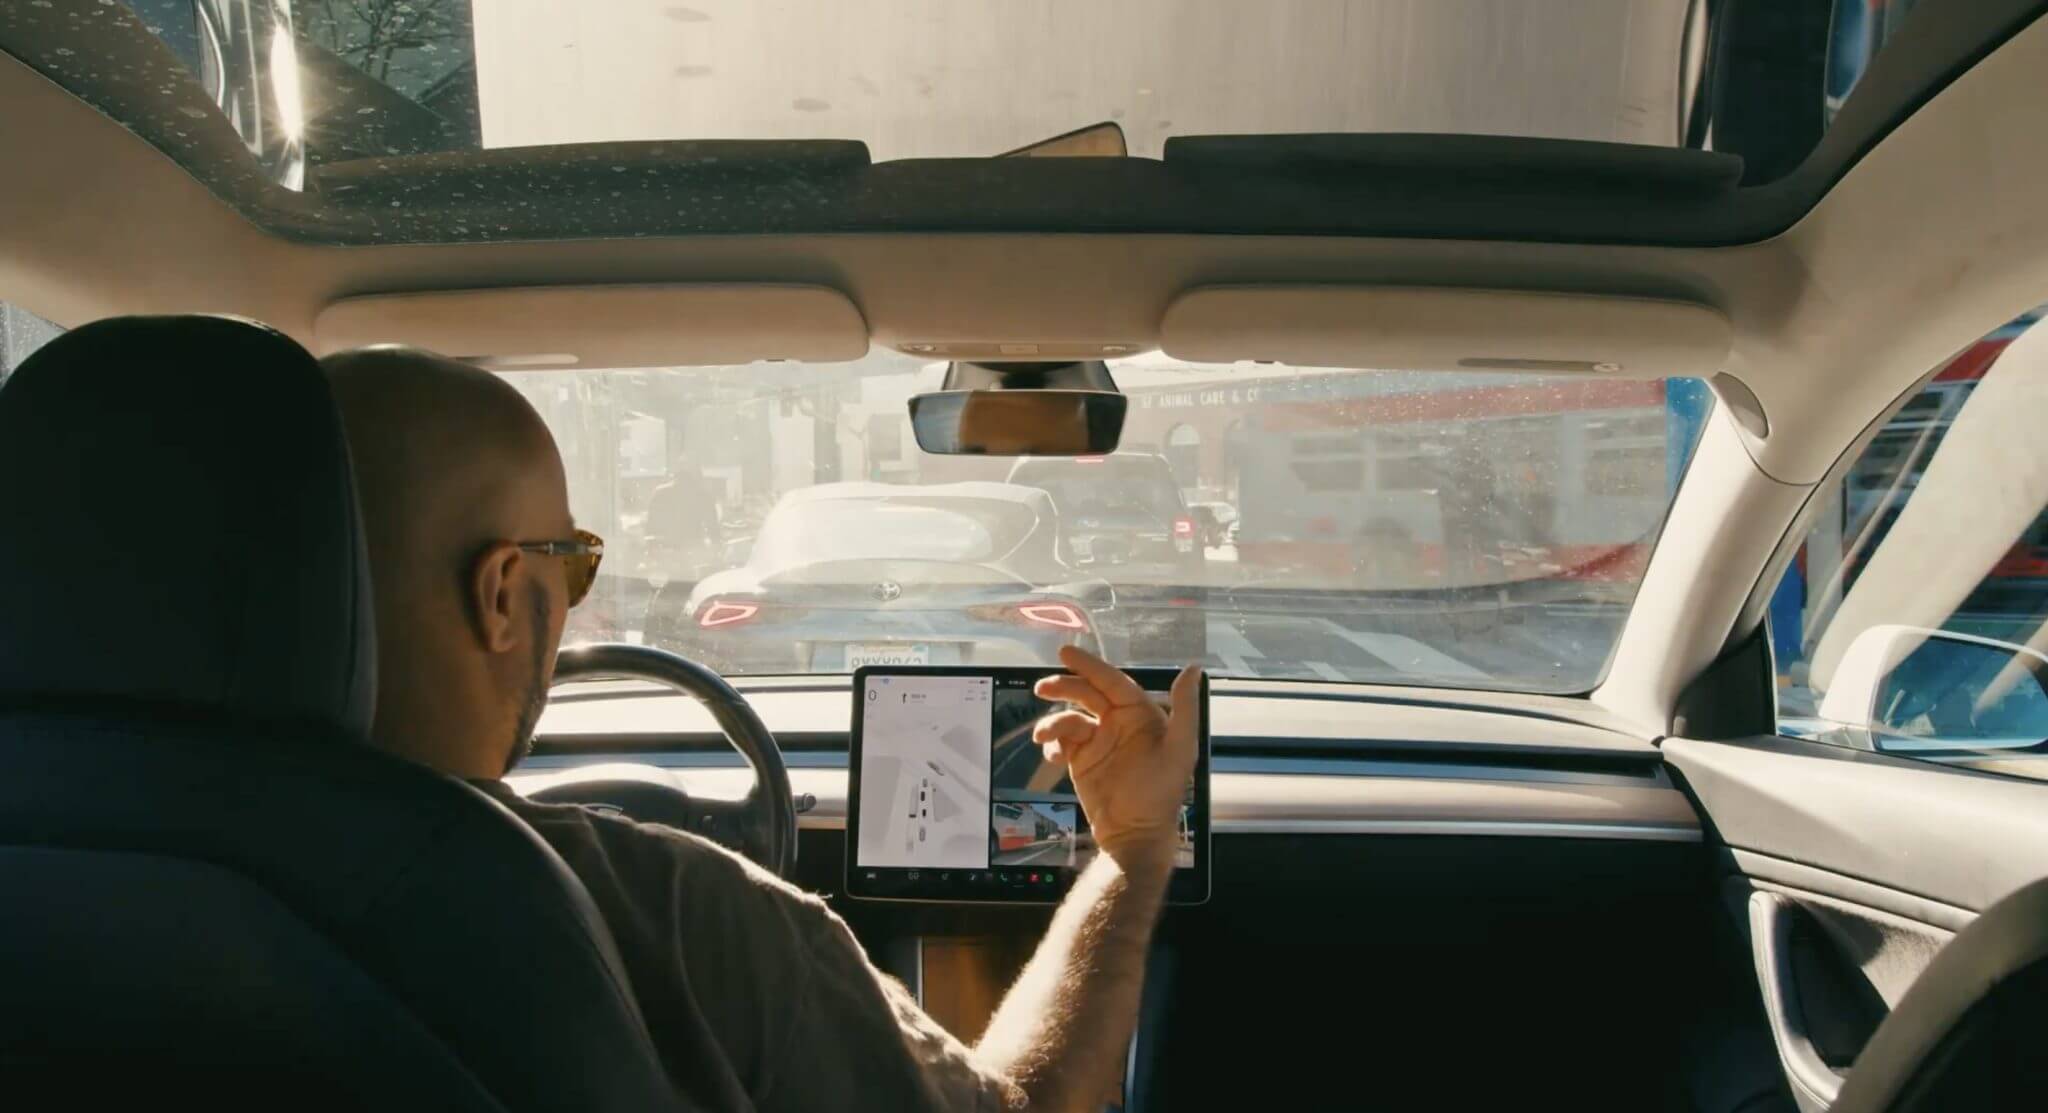 特斯拉全新的自动驾驶基础视频教程重点突出安全性